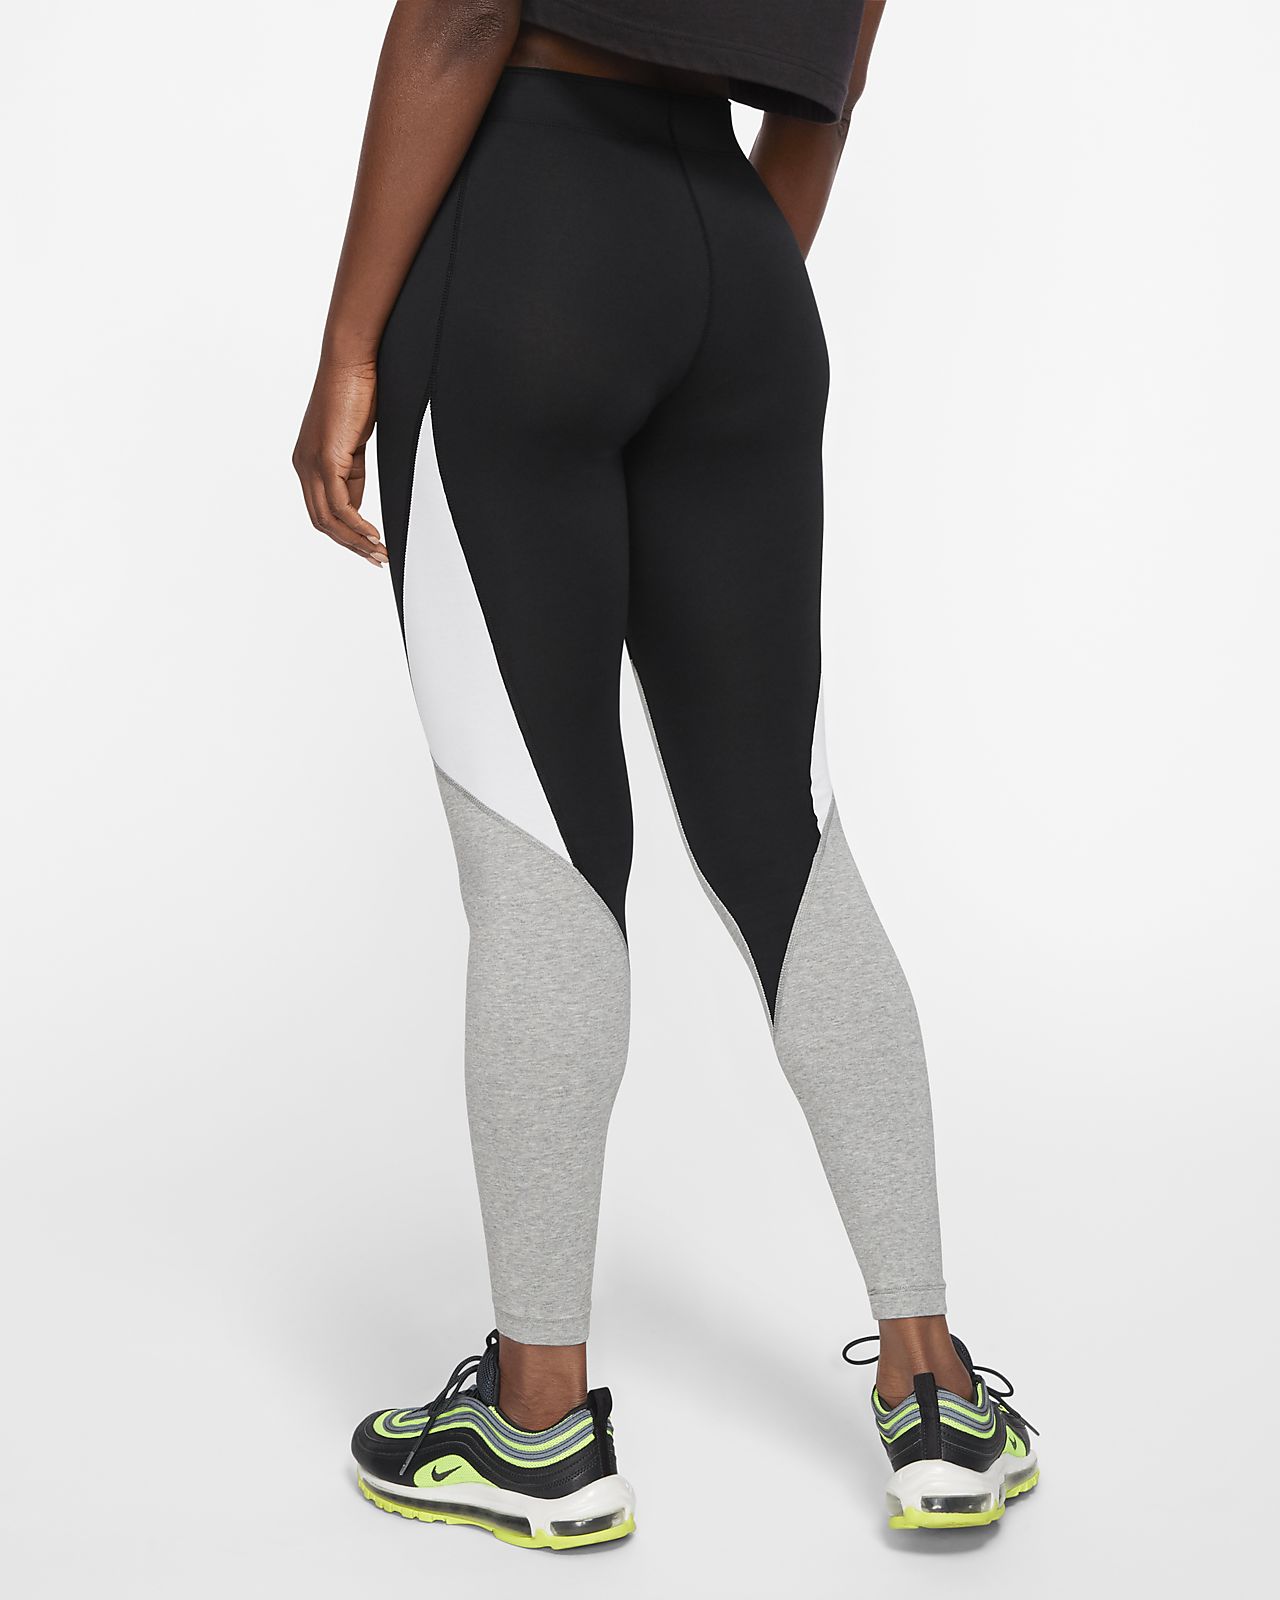 Nike Sportswear Women's Leggings. Nike IL